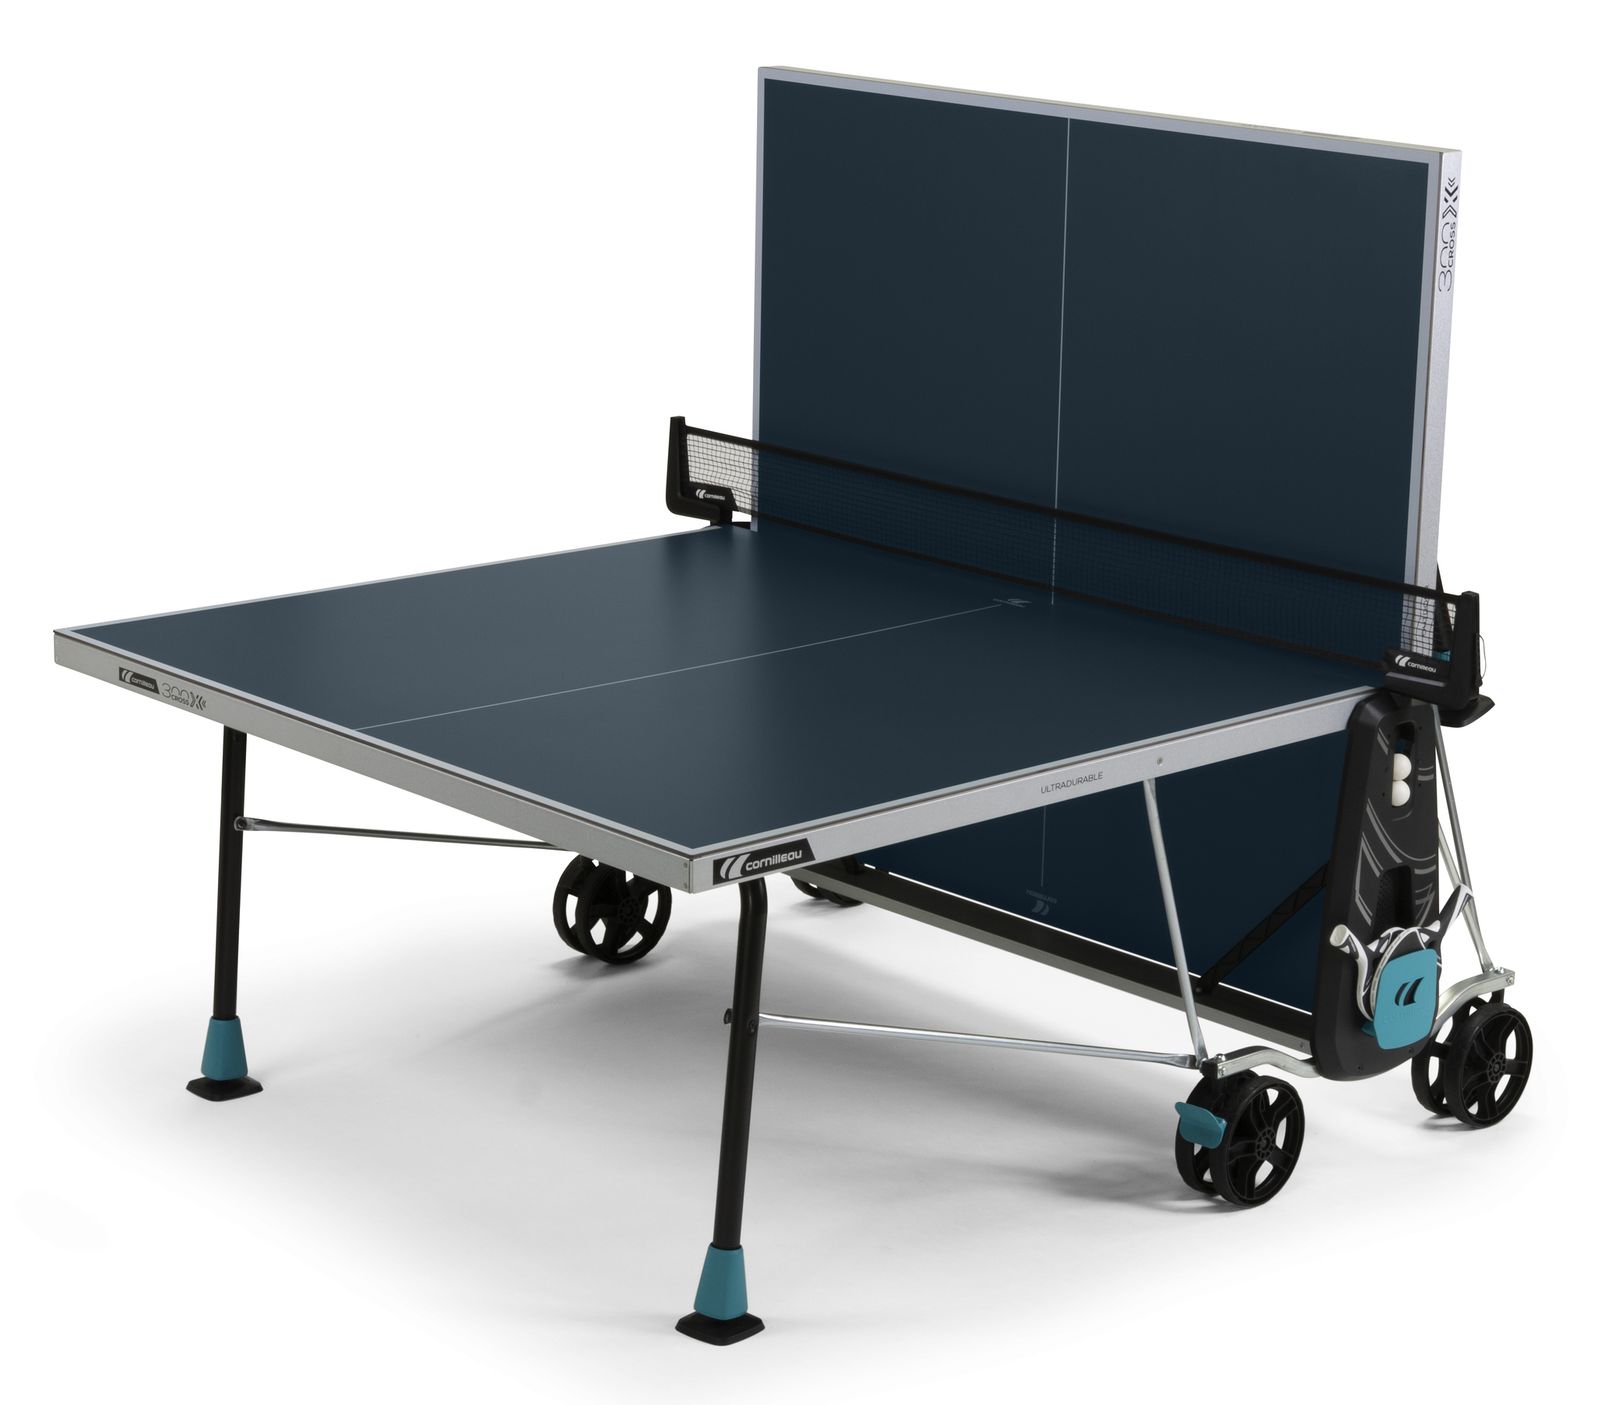 Теннисный стол Cornilleau всепогодный 300X Outdoor blue 5 mm фото №2